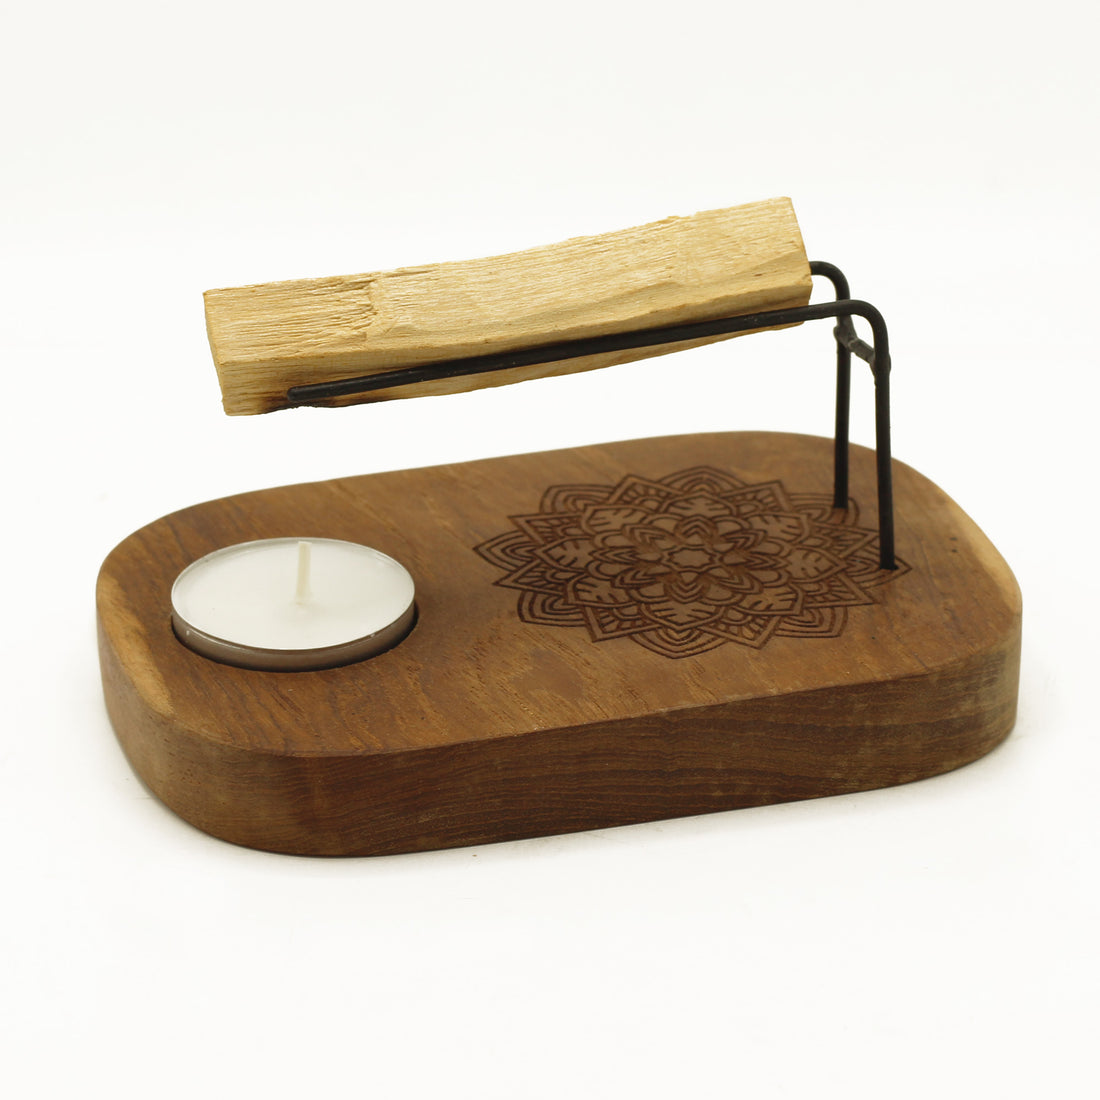 Teardrop Palo Santo Heater - Teak Wood - Yin & Yang Design